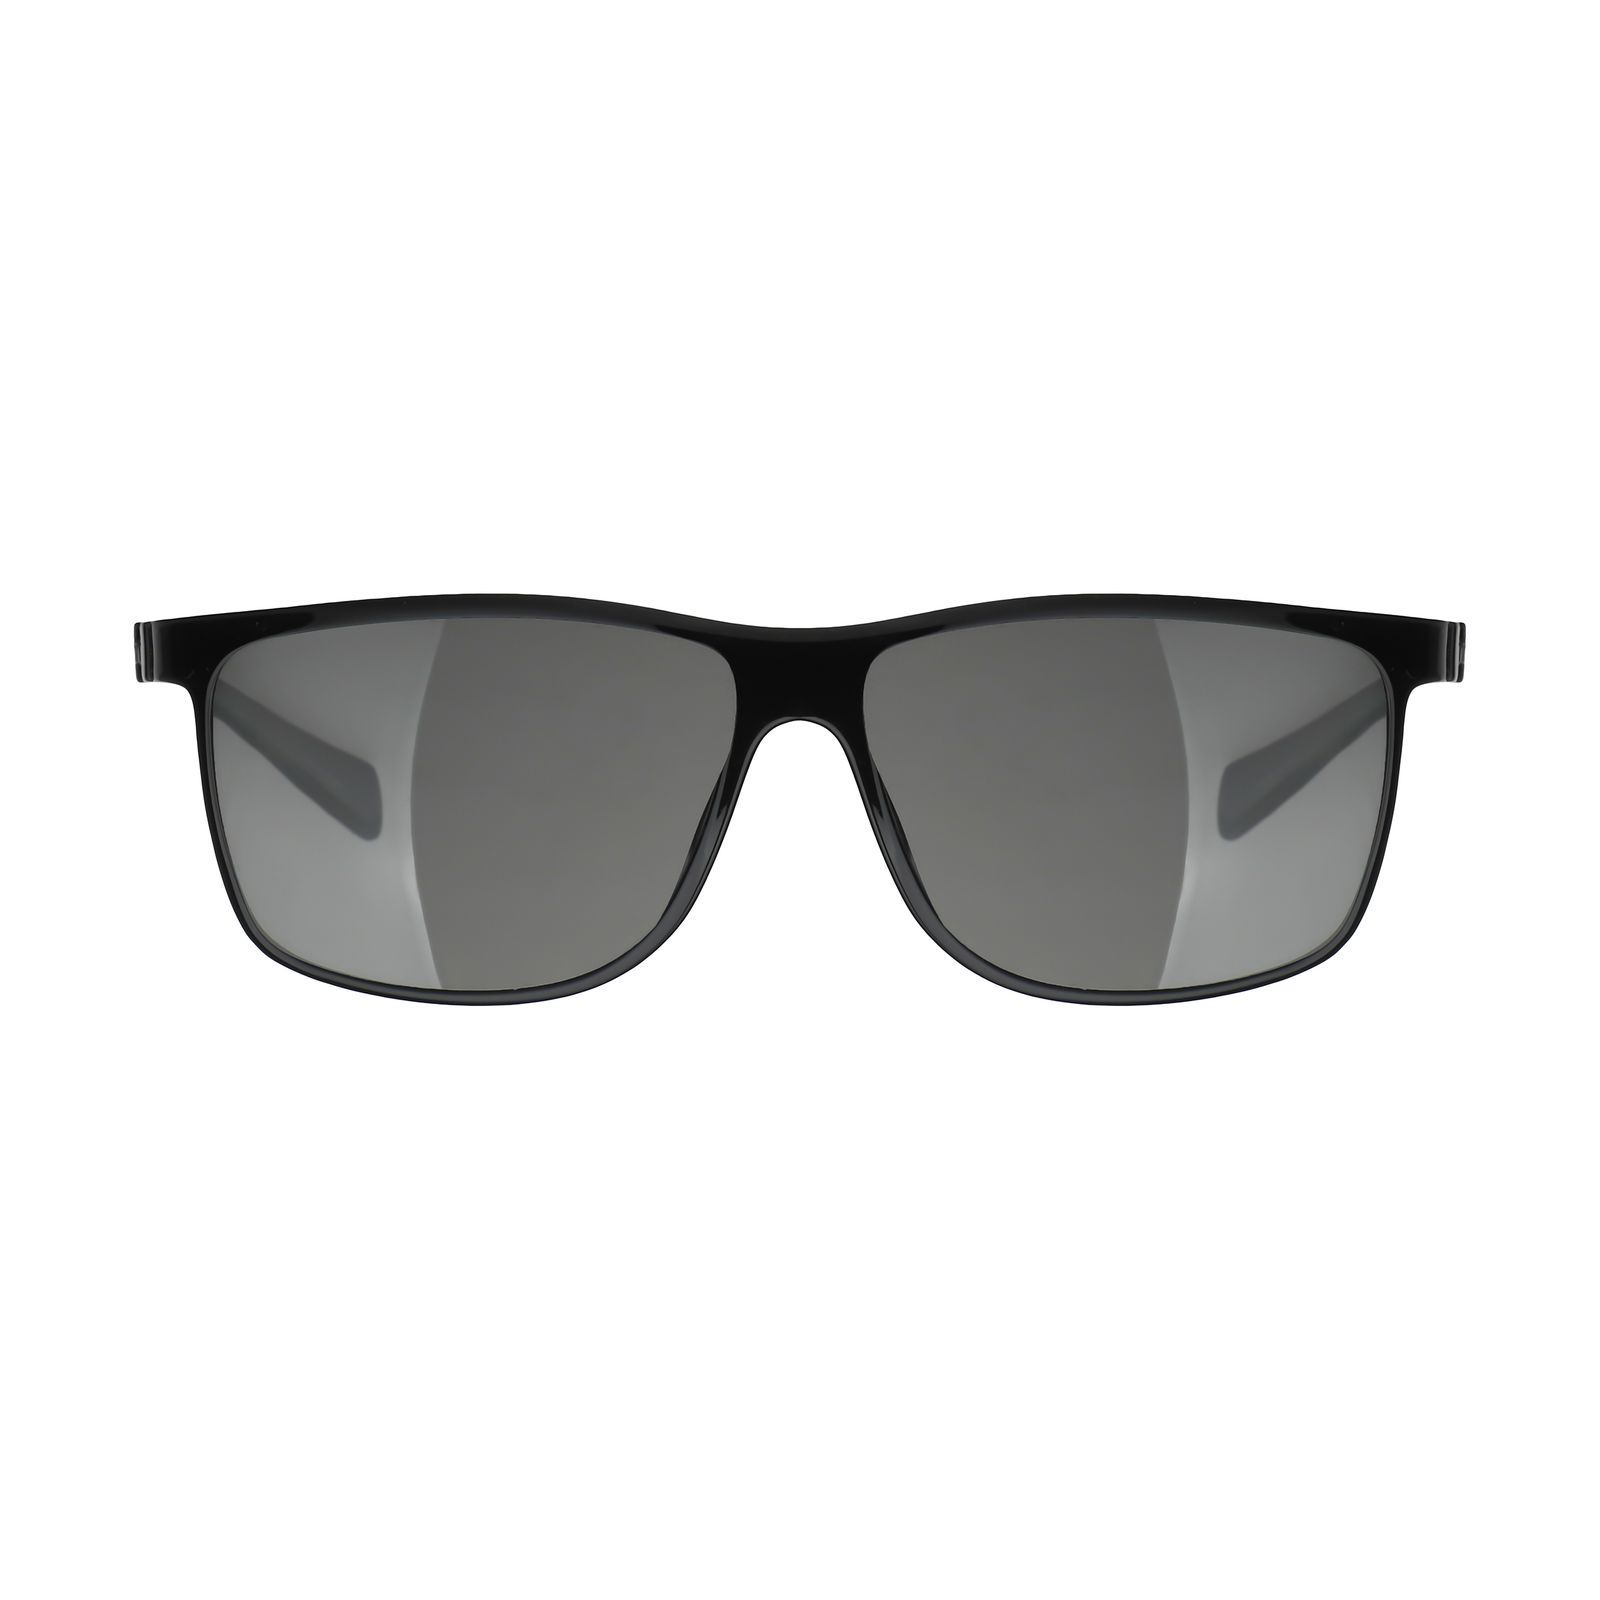 عینک آفتابی مردانه کلارک بای تروی کولیزوم مدل S4018C3 -  - 1